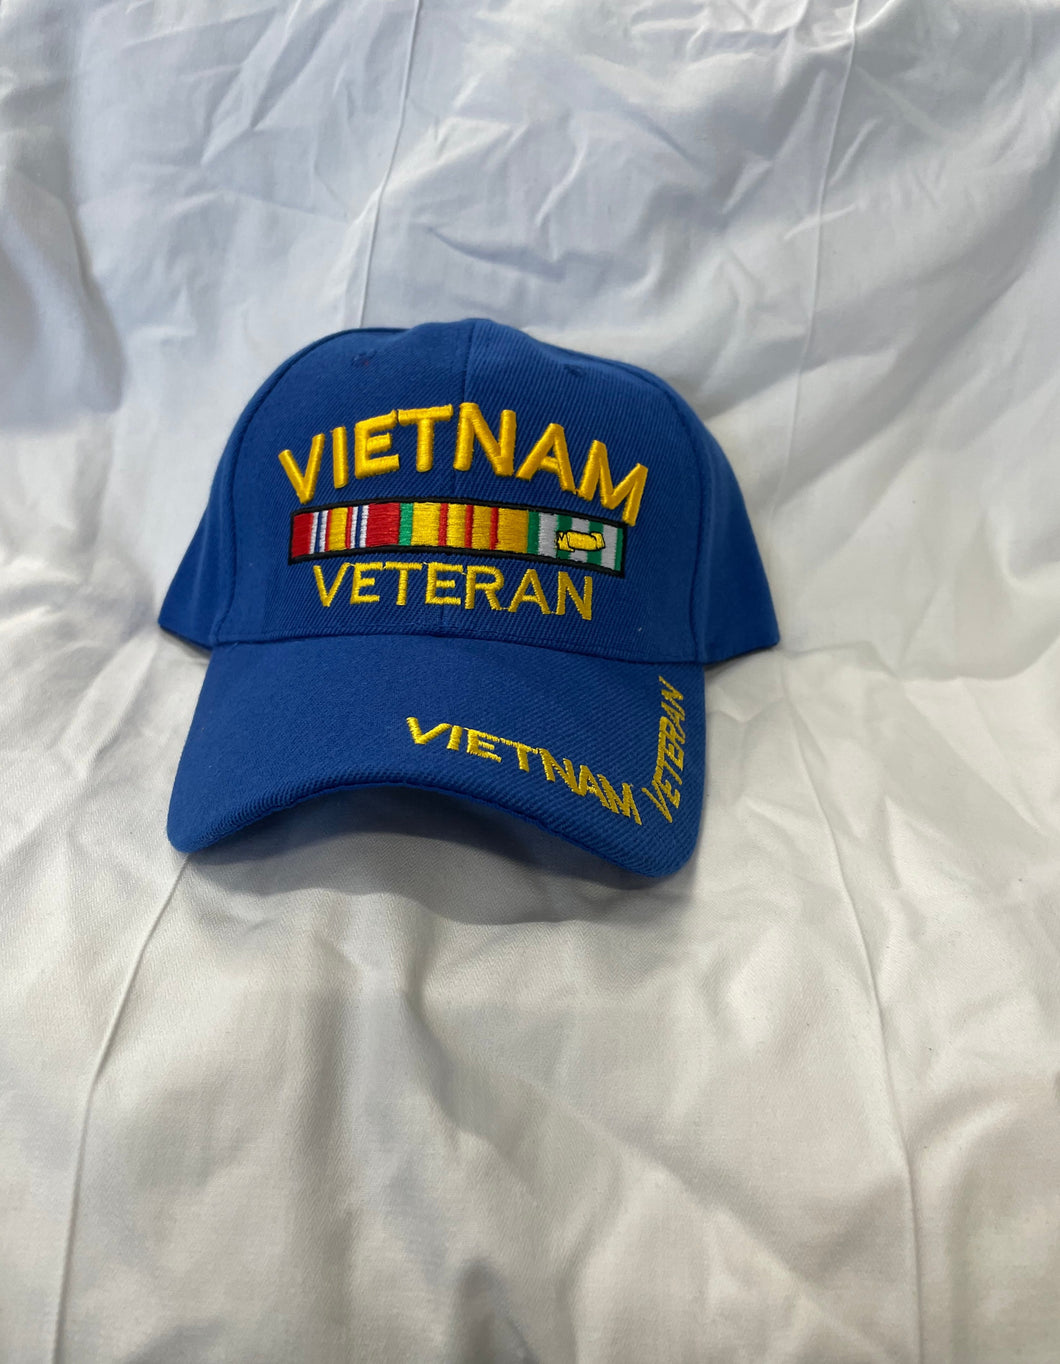 FRONT OF BLUE VIETNAM VETERAN HAT